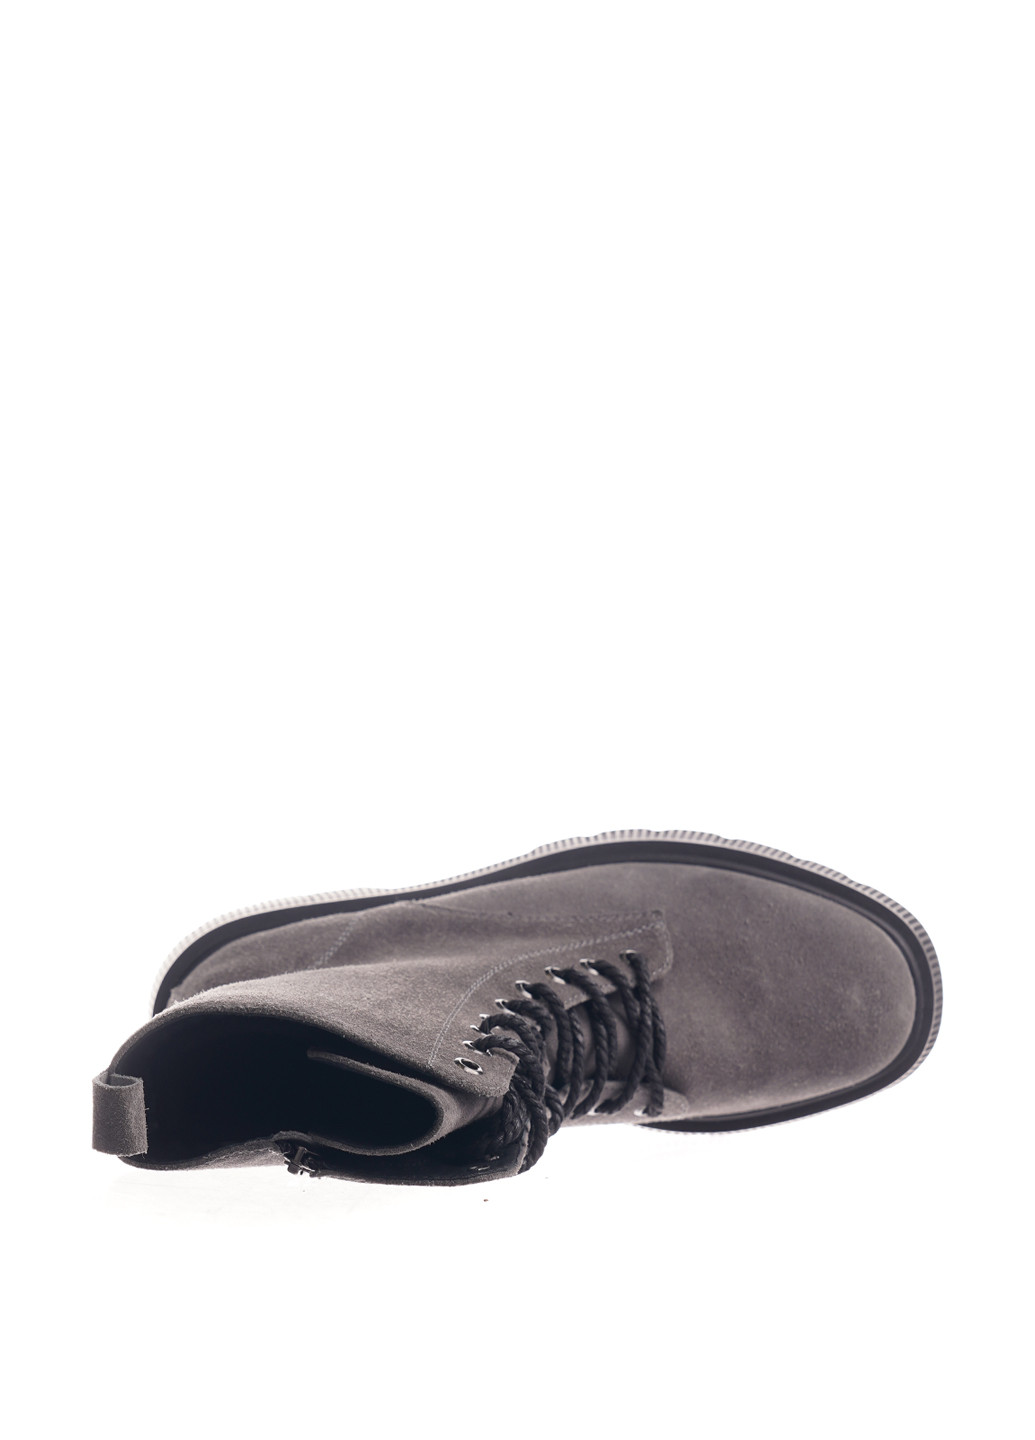 Зимние ботинки берцы Camalini без декора из натуральной замши